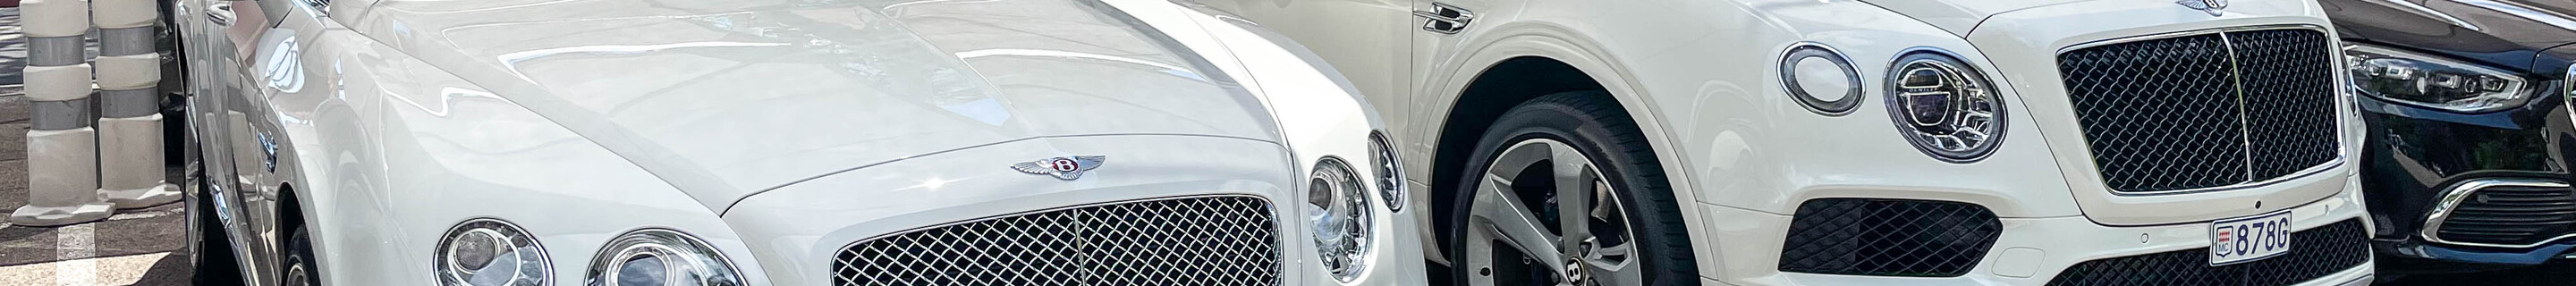 Bentley Continental GTC V8 2016